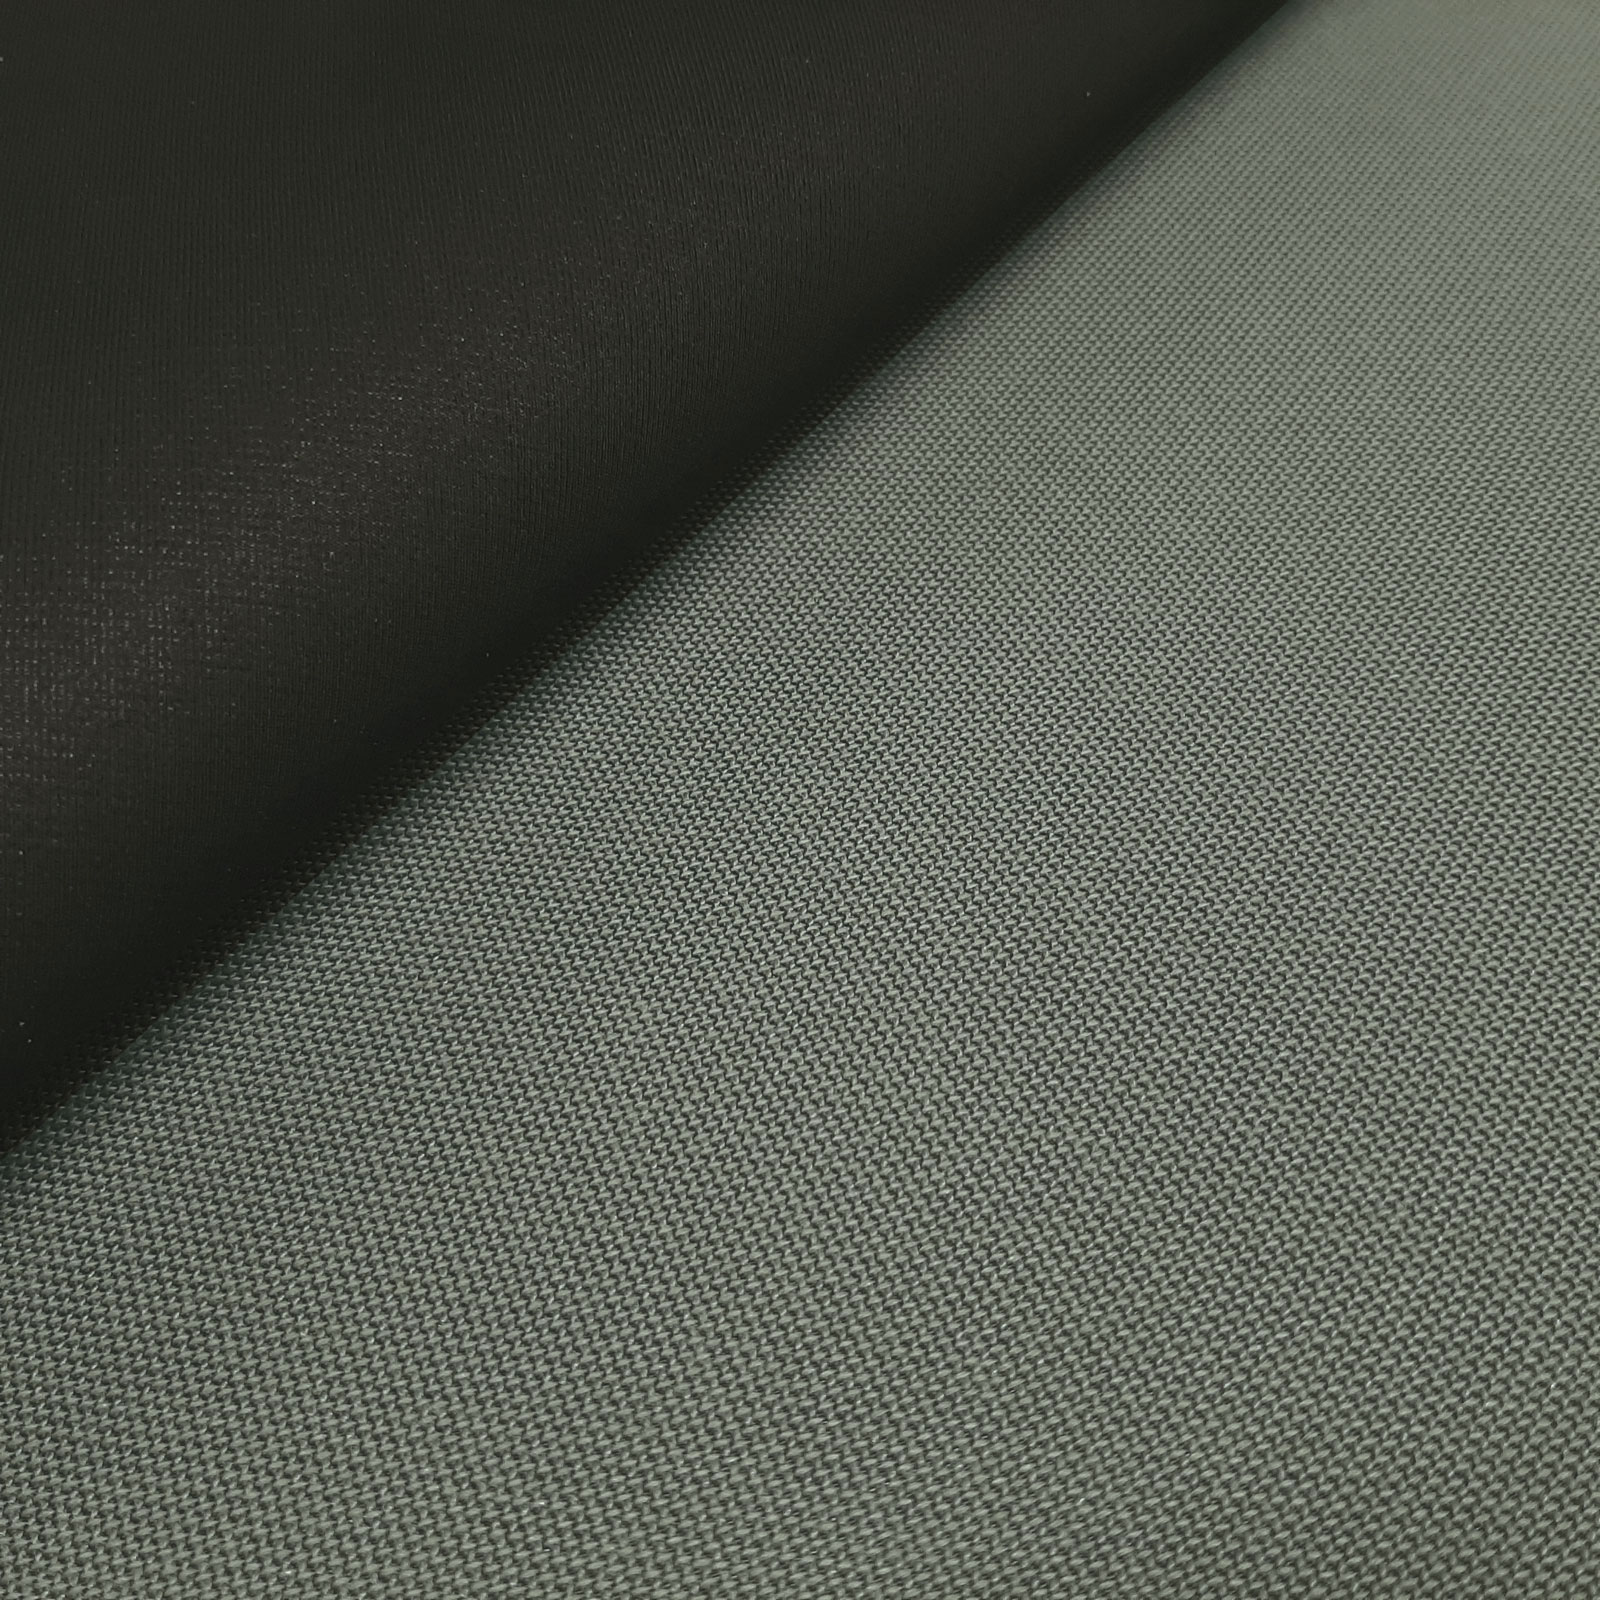 Alonsos - Keprotec® 3-layer laminate - Grey per 10 cm